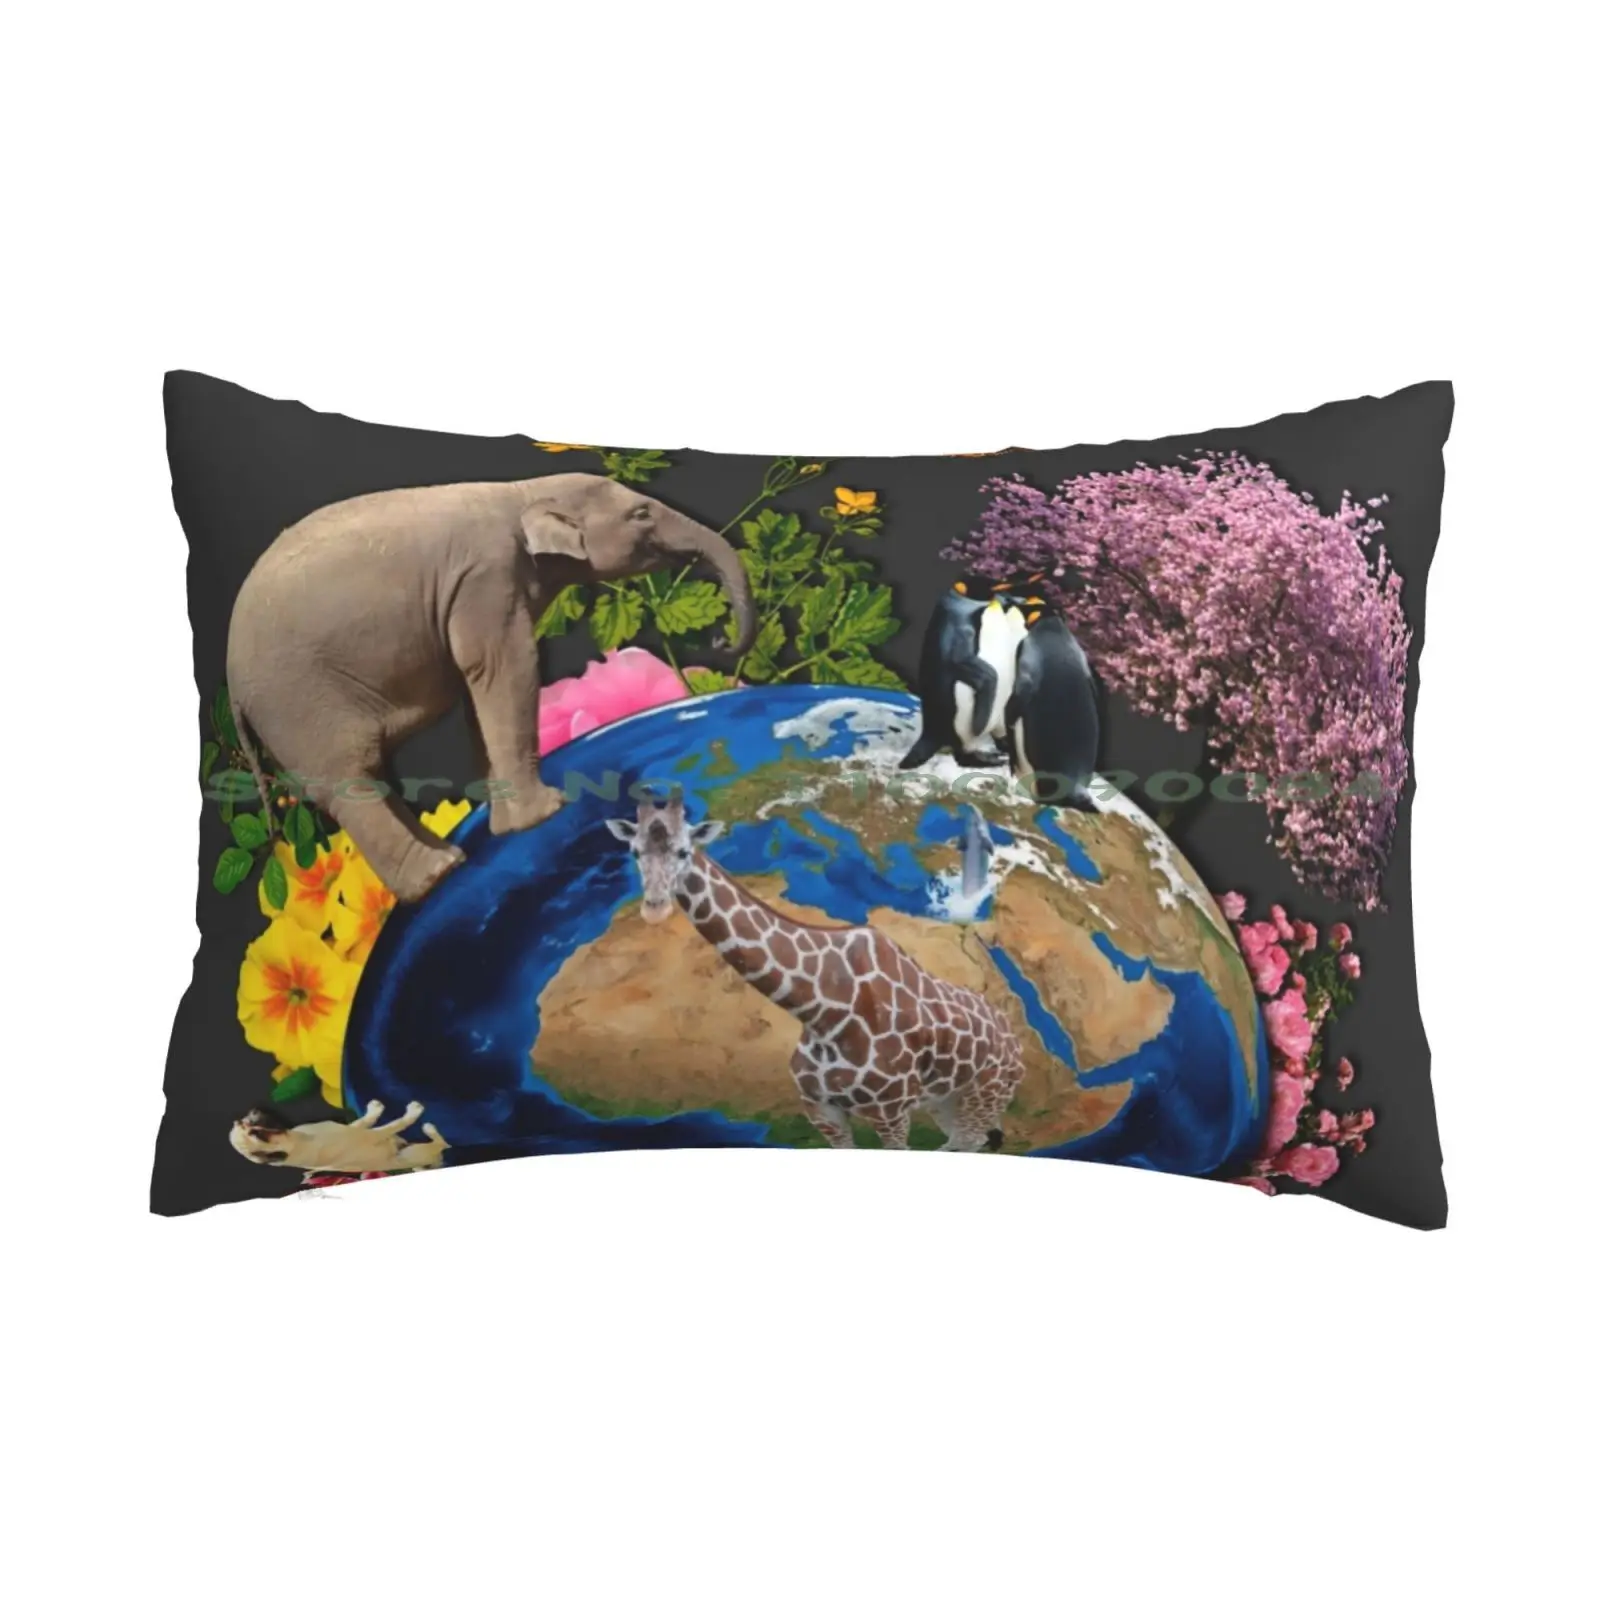 

Чехол с подушкой 20x30 50*75, чехол для дивана, спальни, мира, земли, планеты, мамы, природа, цветы, деревья, растения, животные, тигр, собака, жираф